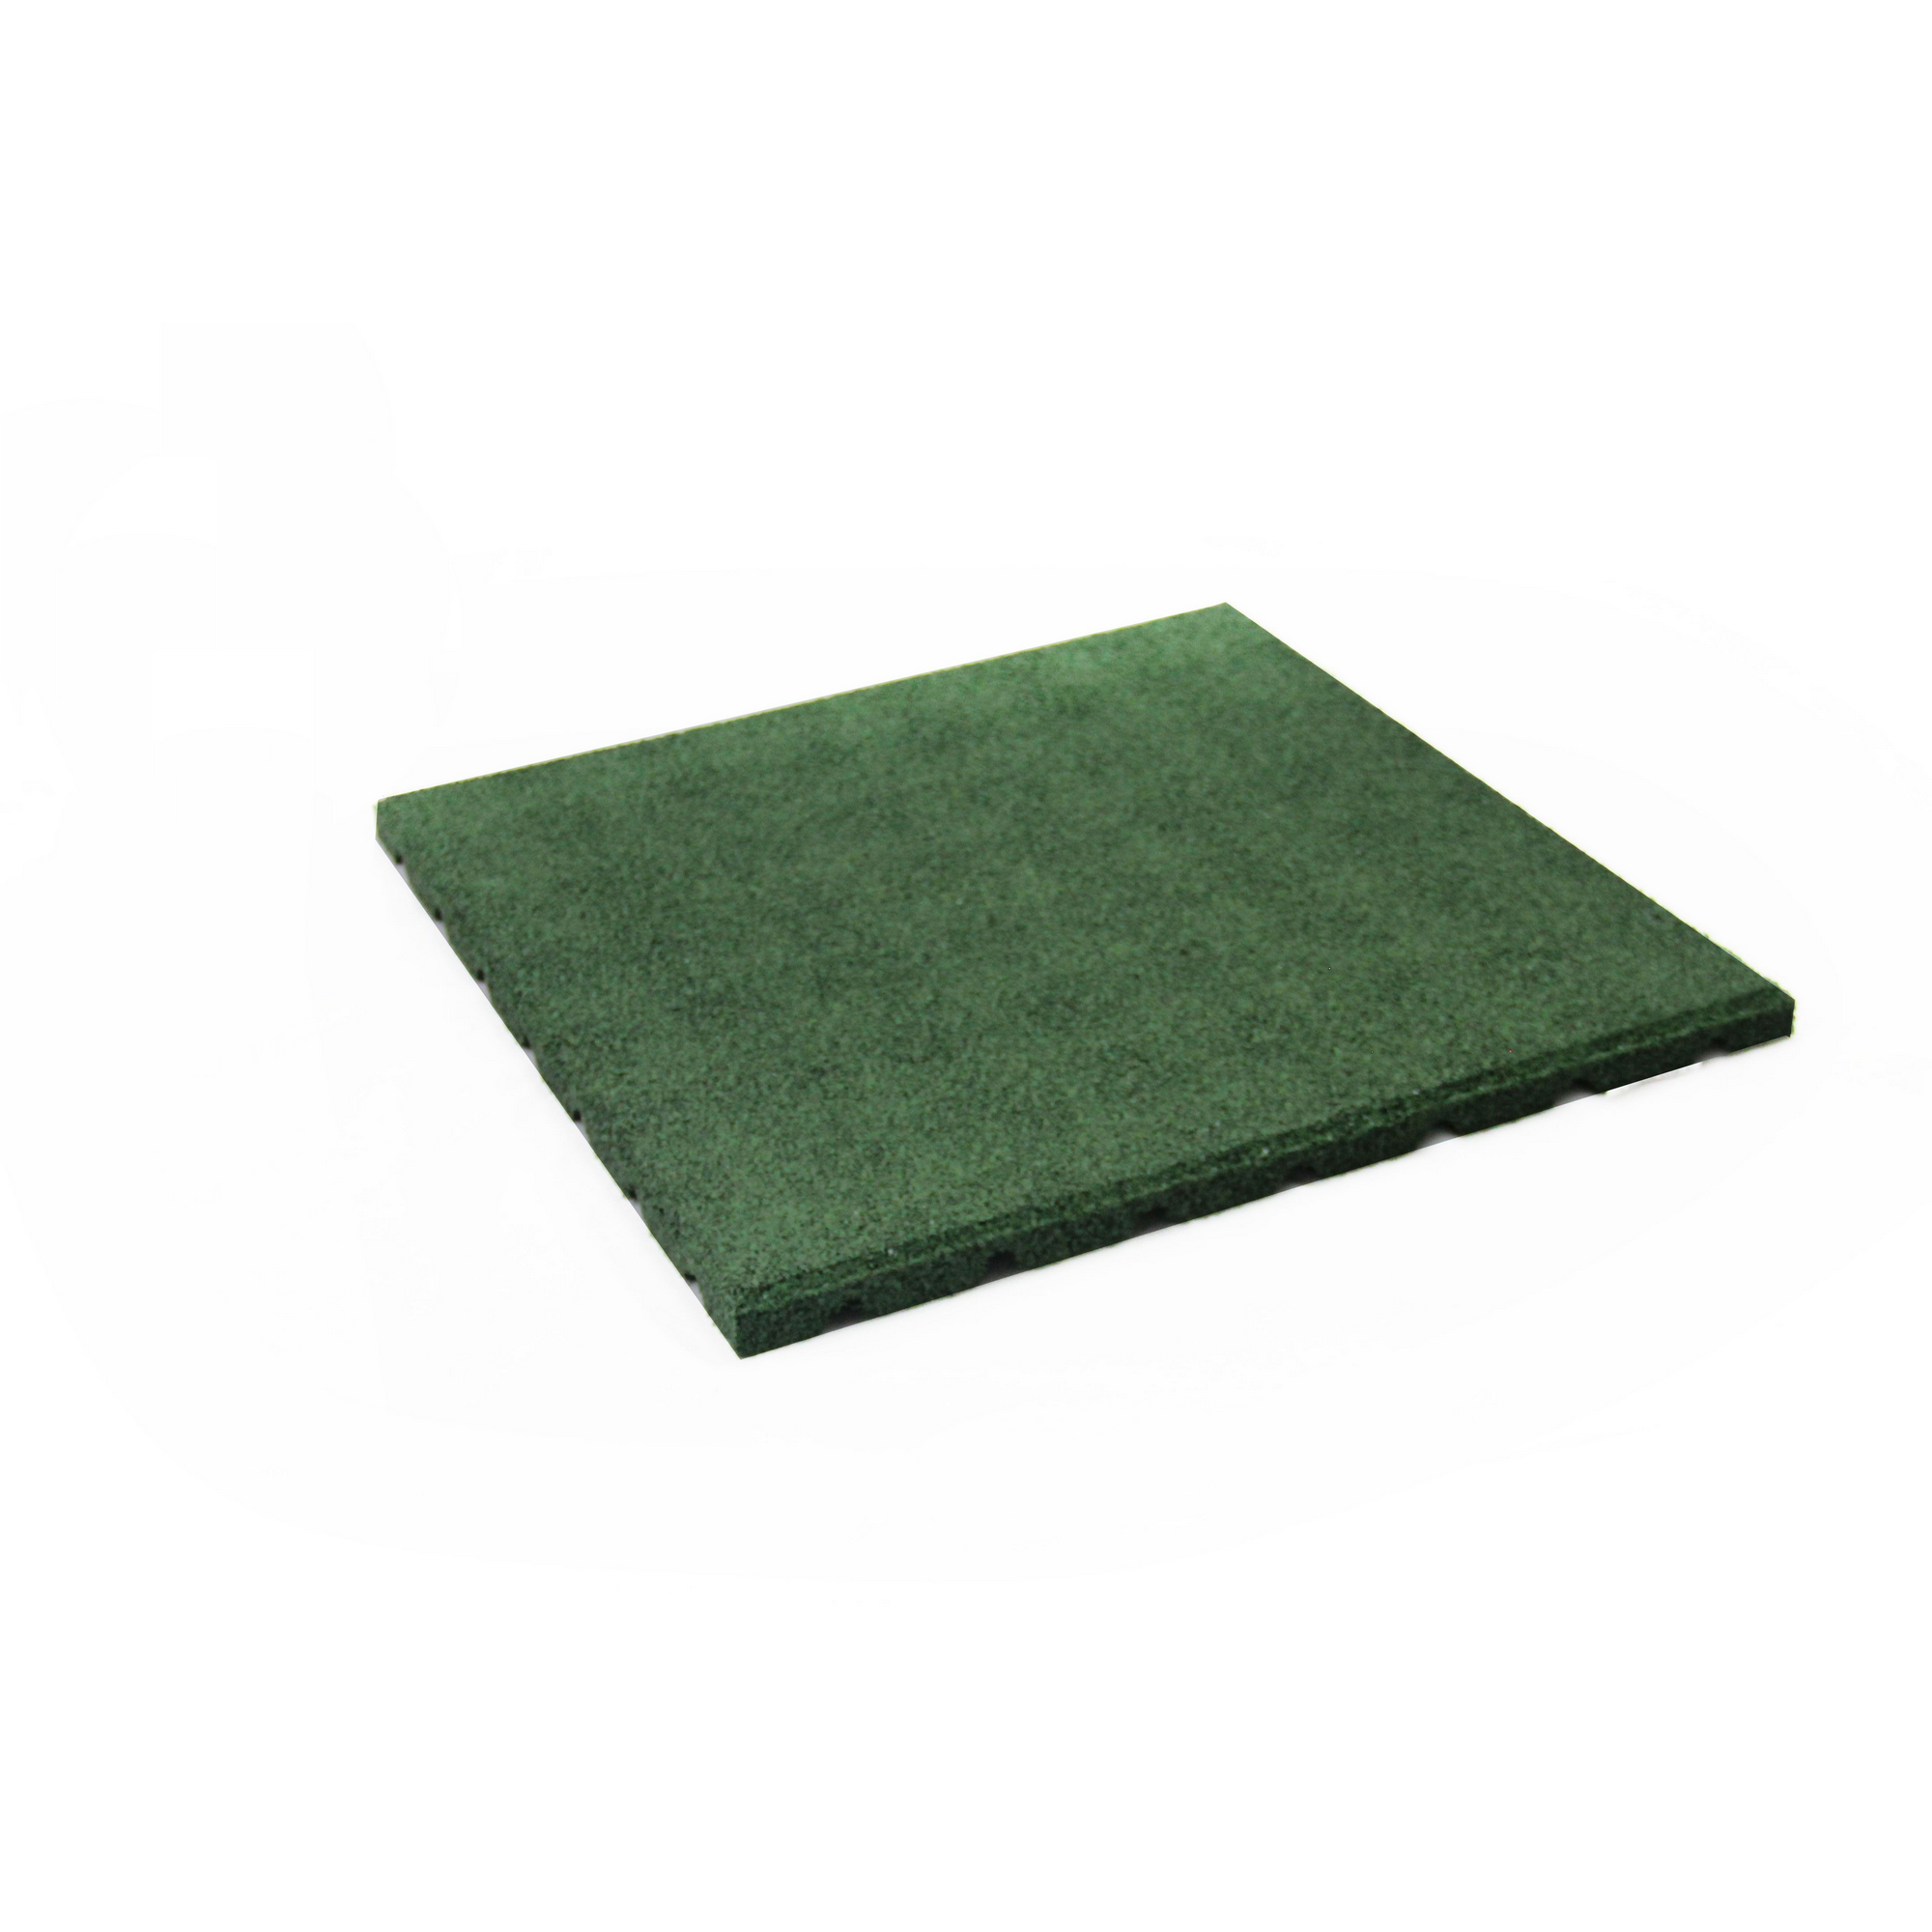 Fallschutzmatte grün 50 x 50 x 2,5 cm + product picture